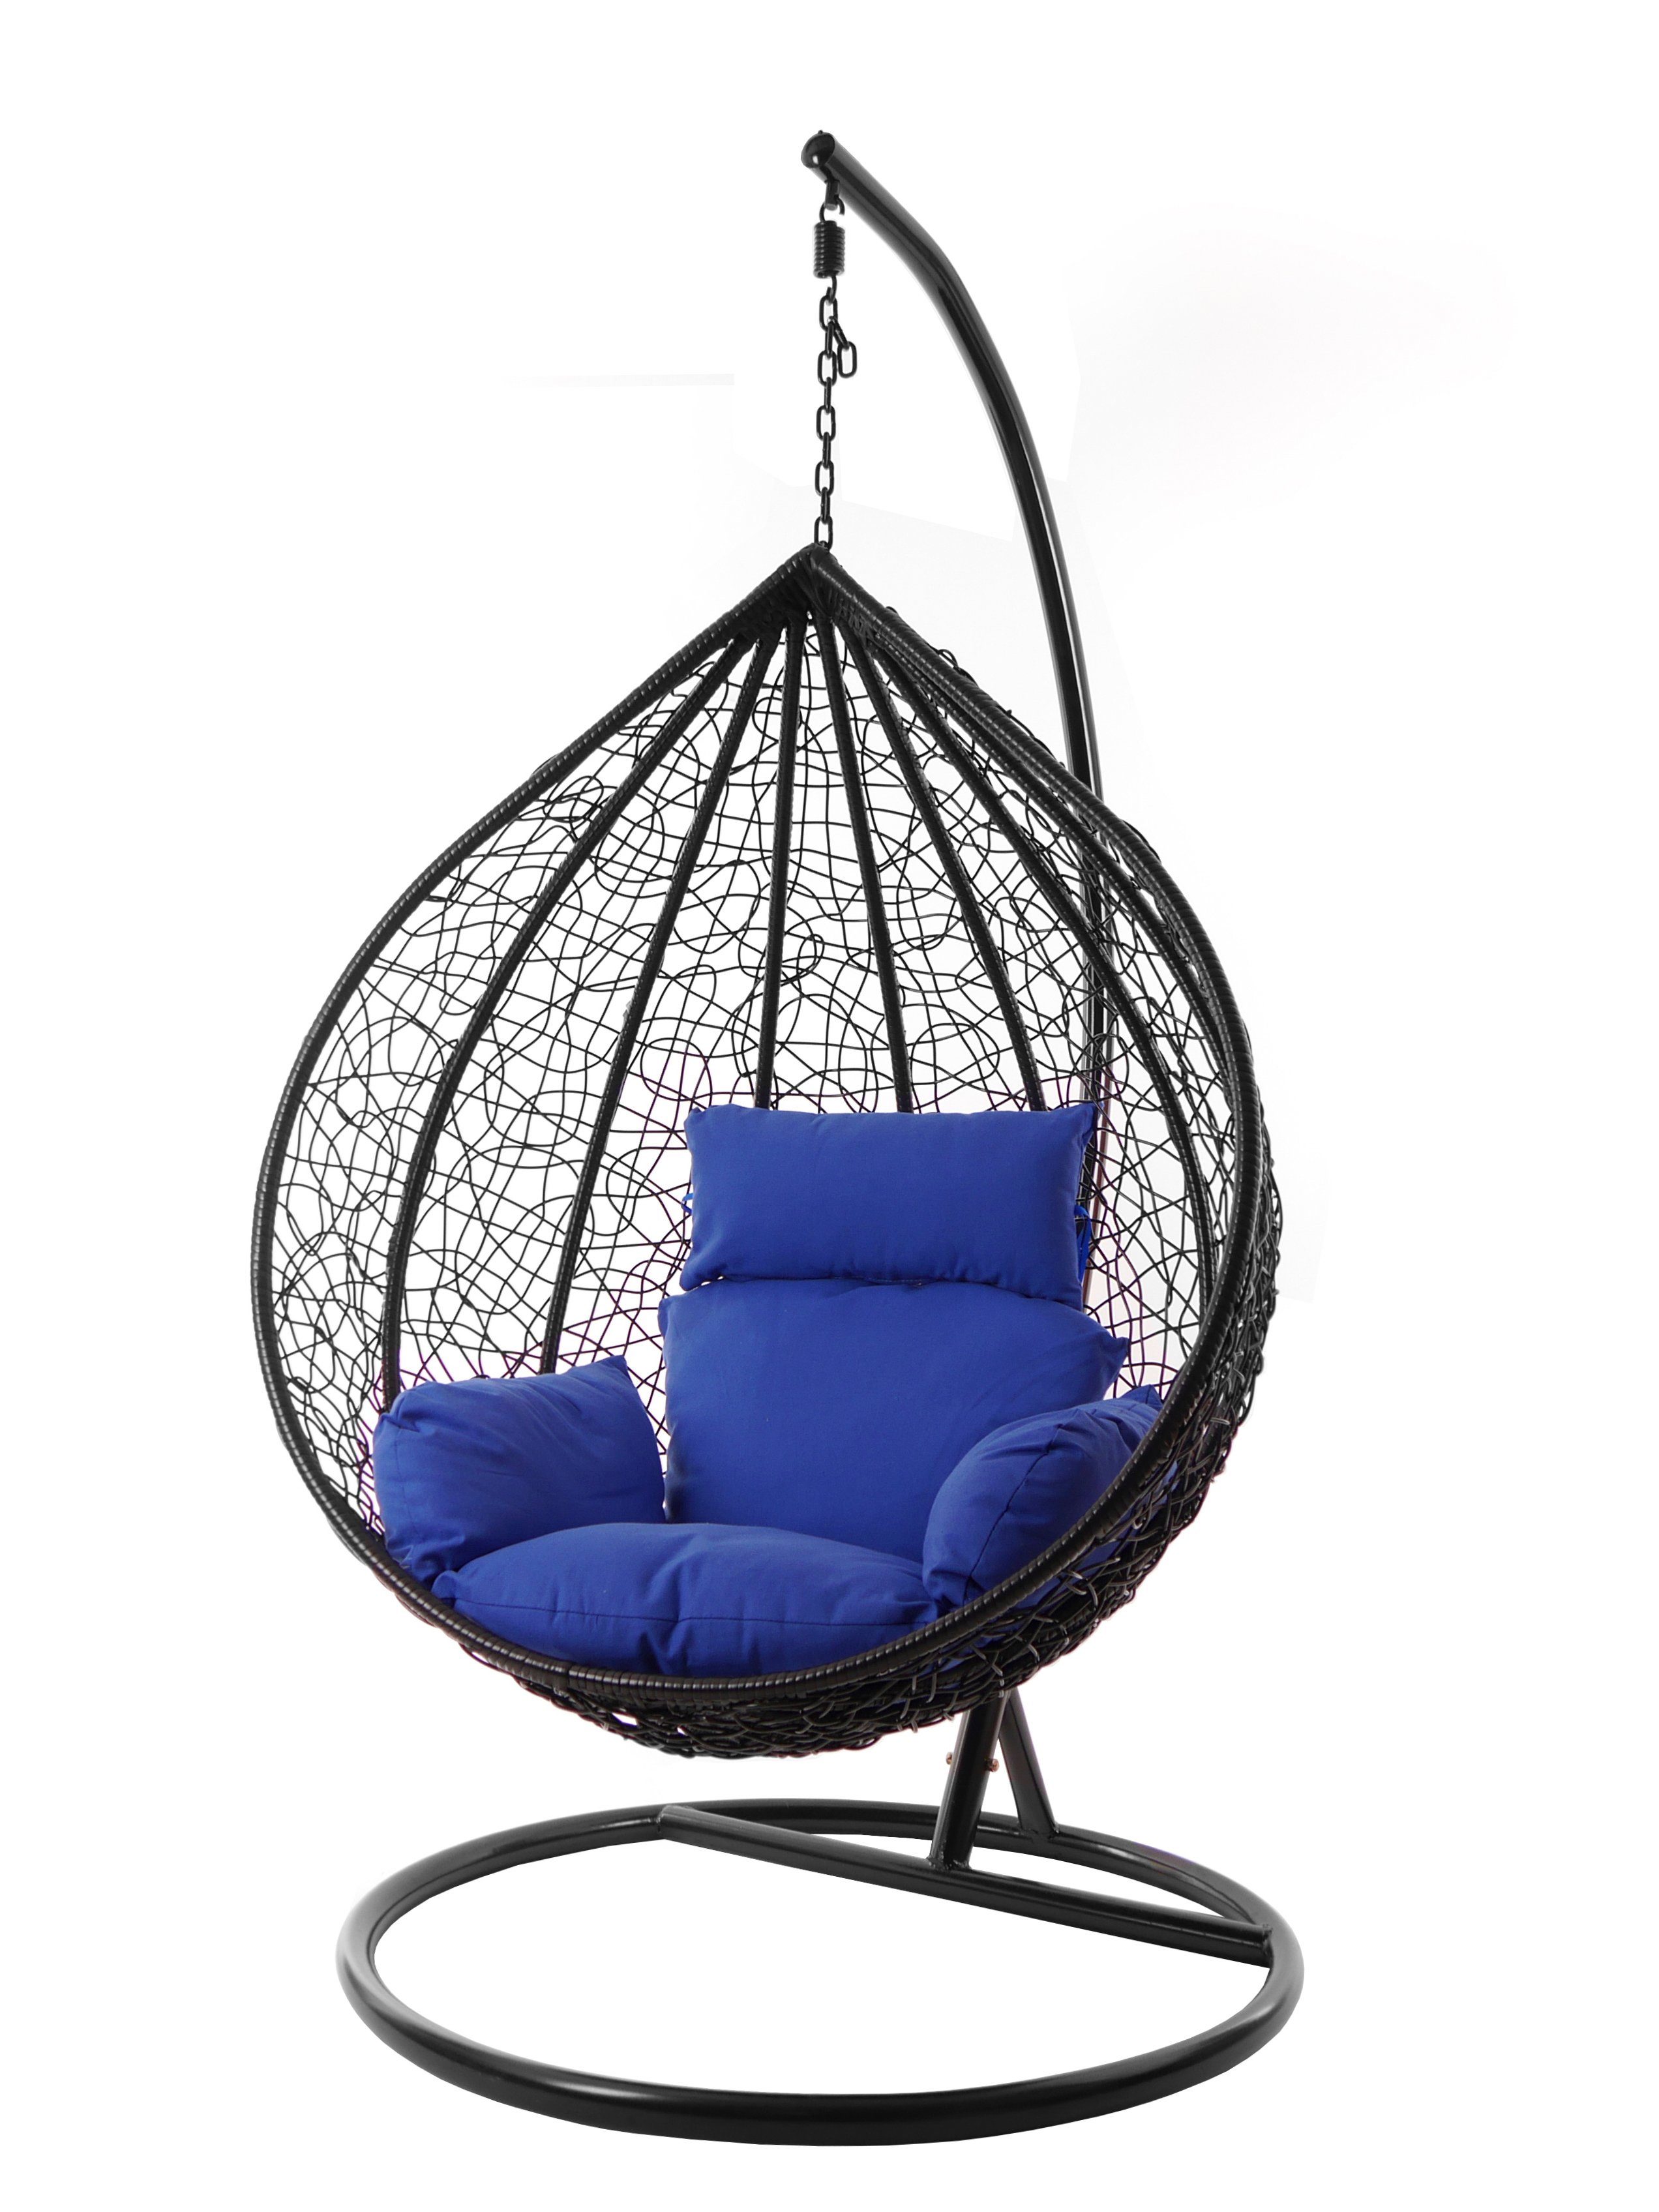 KIDEO Hängesessel Hängesessel XXL Chair, blau Swing schwarz, verschiedene inklusive, admiral) und Farben edel, (5900 MANACOR Kissen Nest-Kissen, Gestell